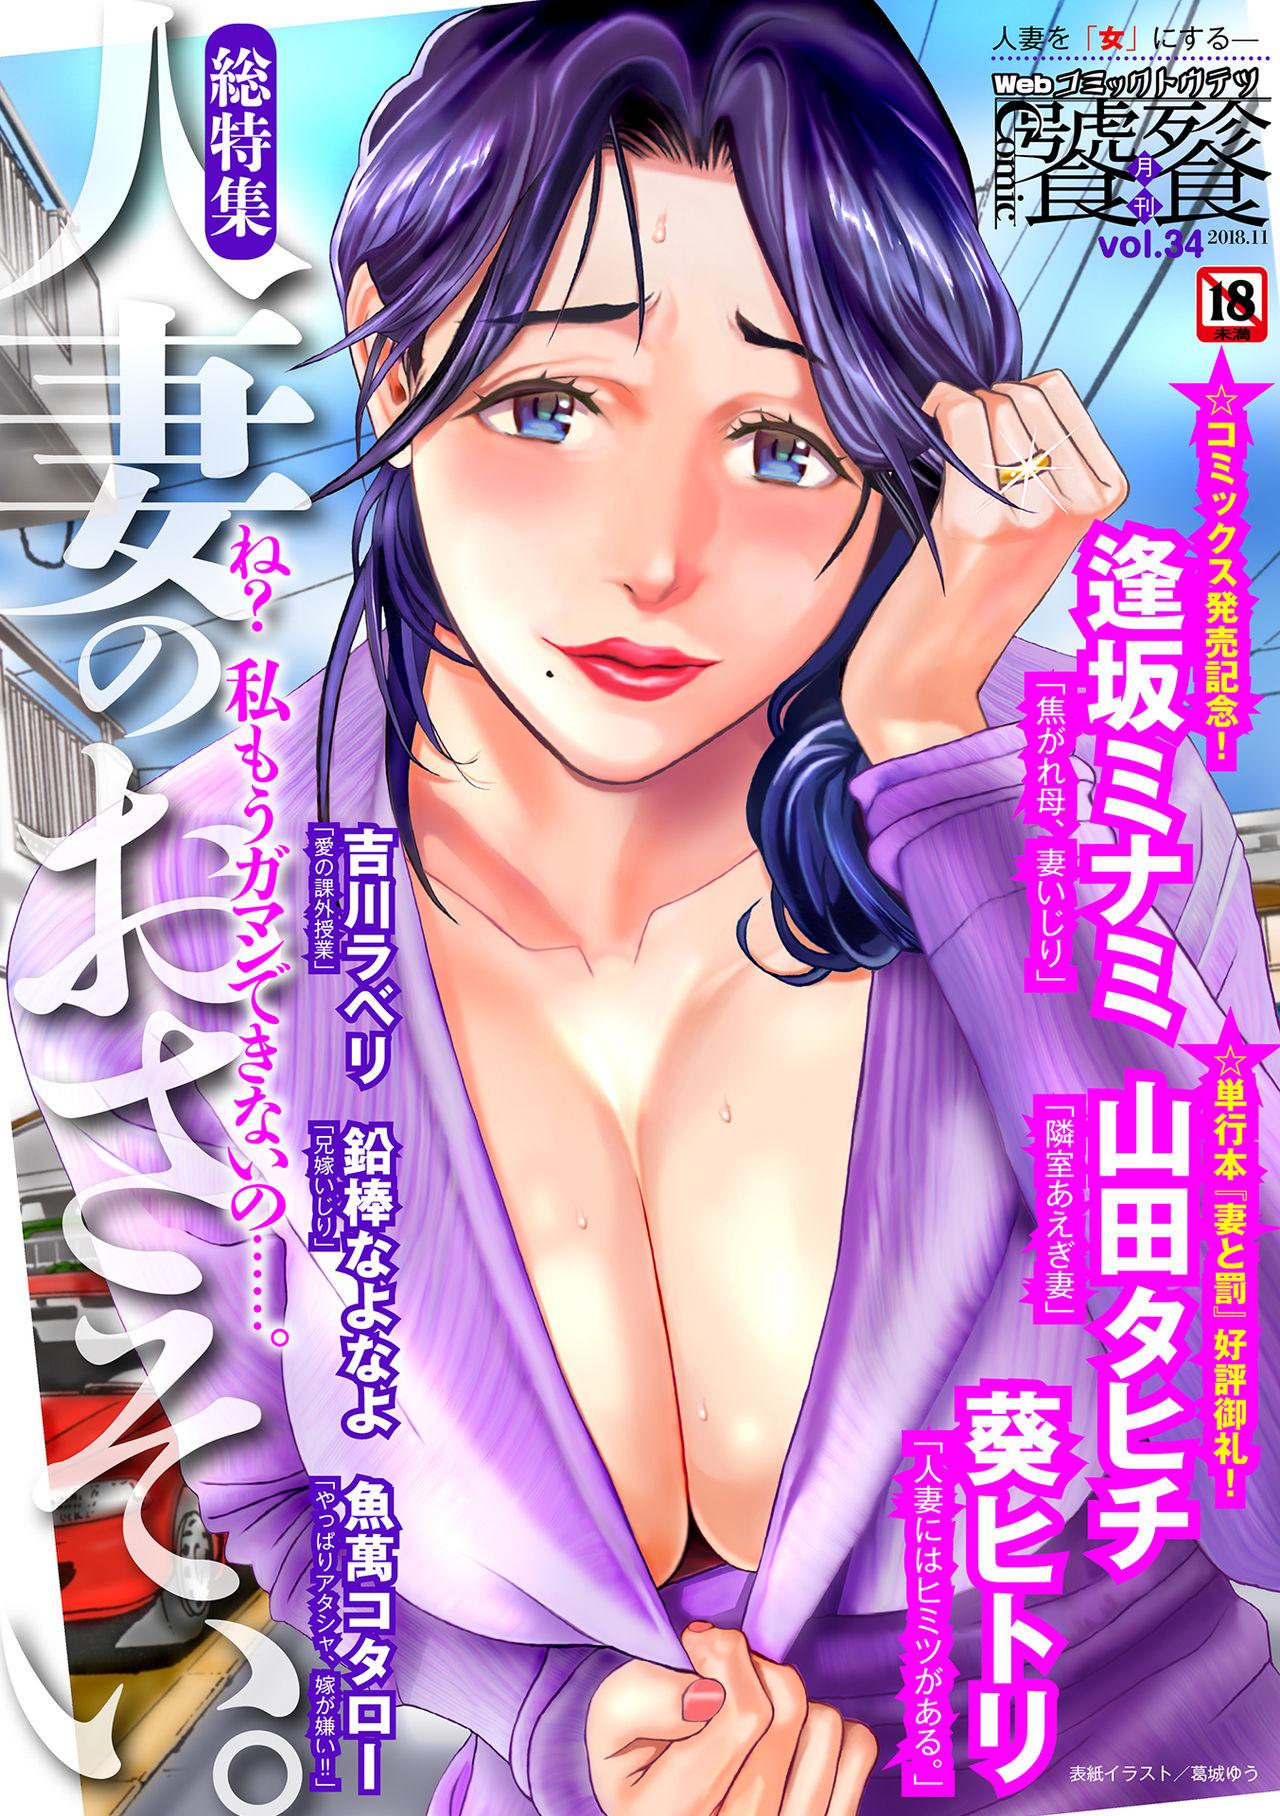 Hoe Web Comic Toutetsu Vol. 34 Free Porn Amateur - Picture 1